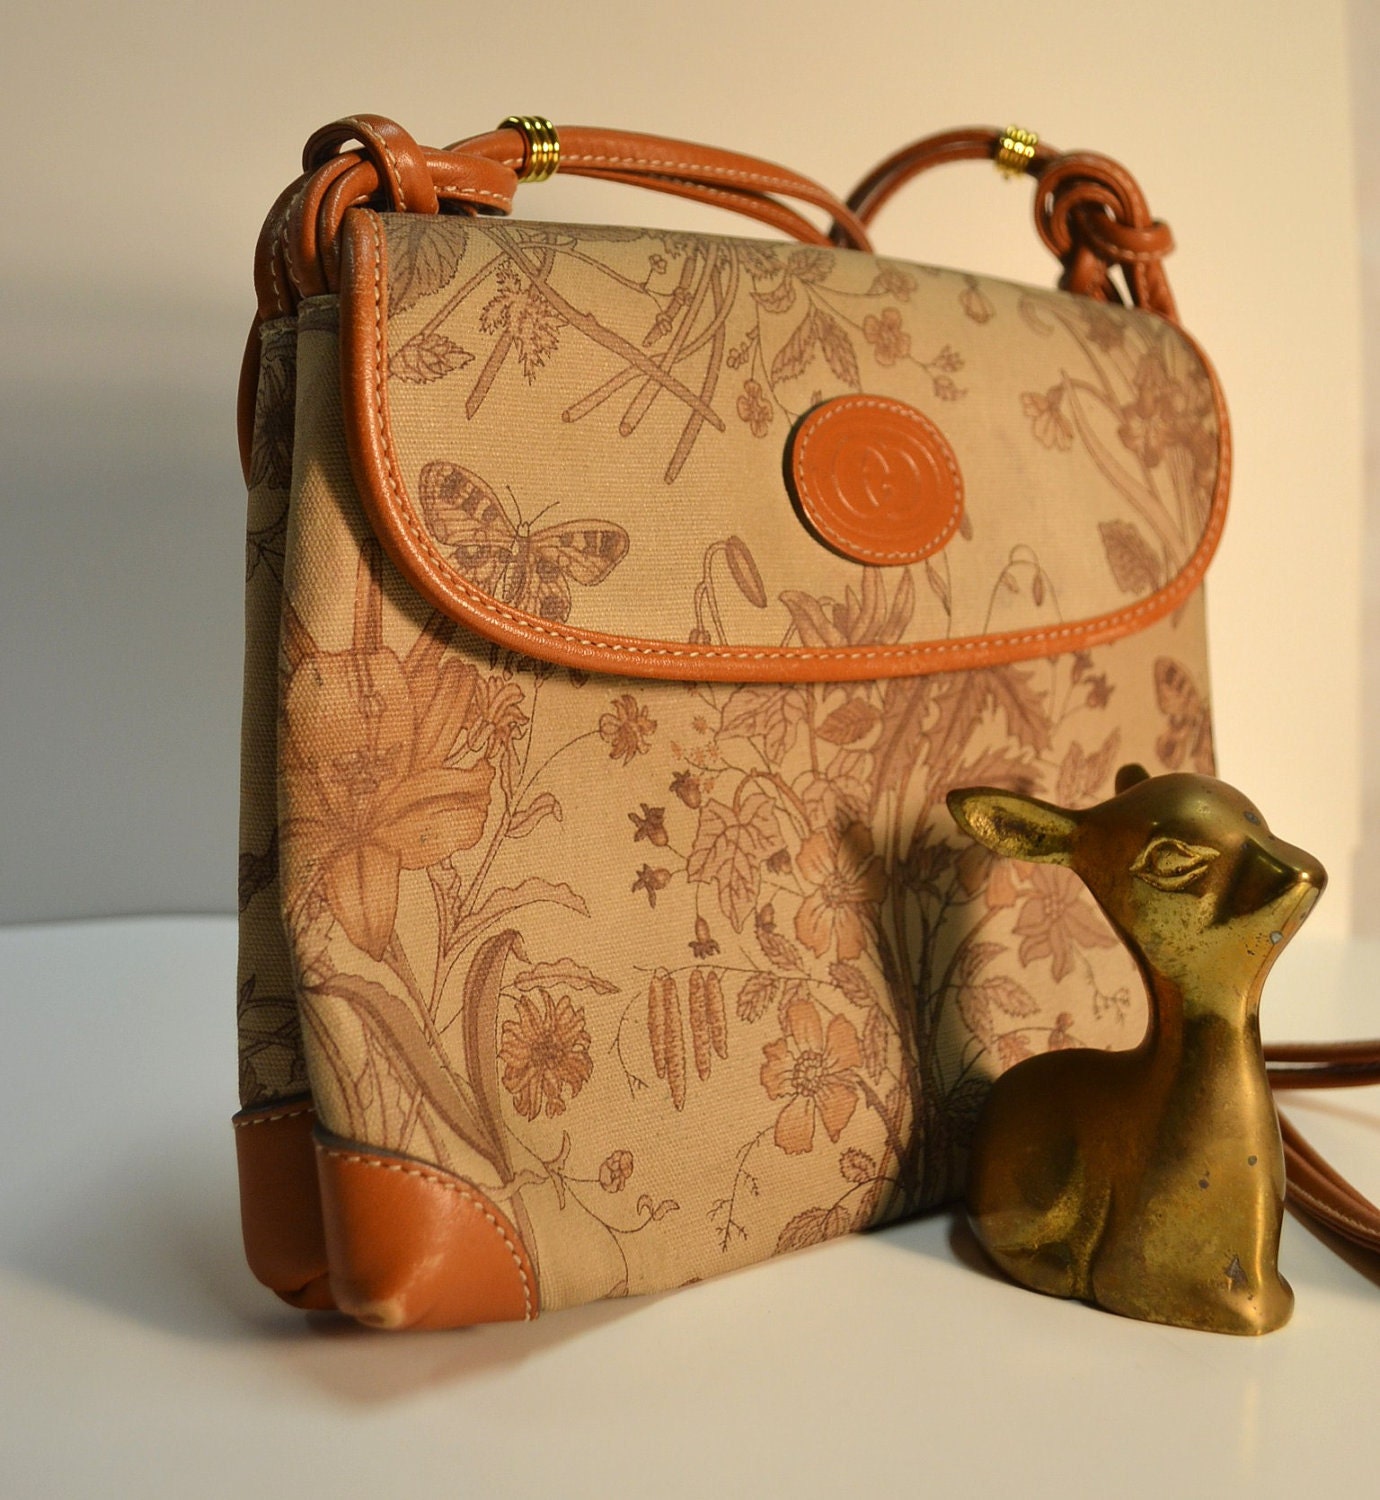 Authentic Vintage Gucci bag purse / Gucci Flora Floral gucci